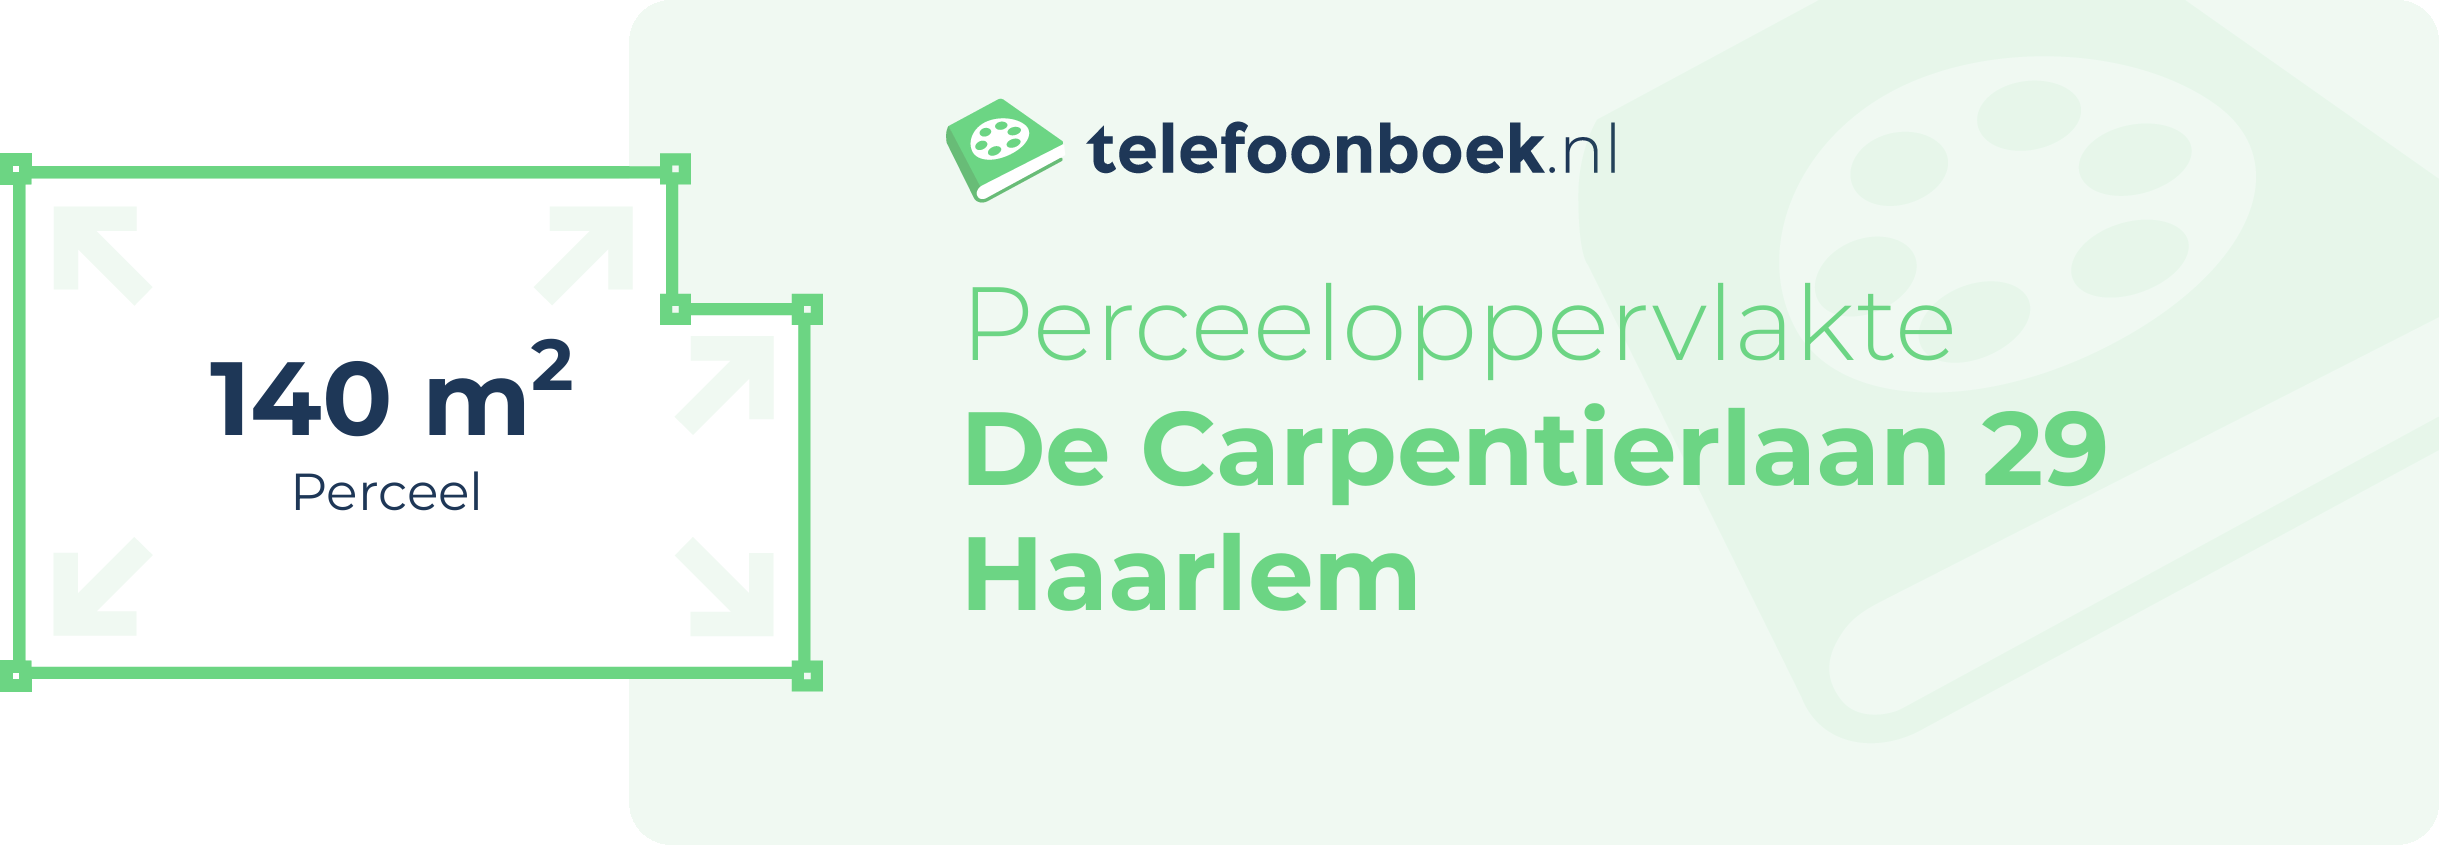 Perceeloppervlakte De Carpentierlaan 29 Haarlem